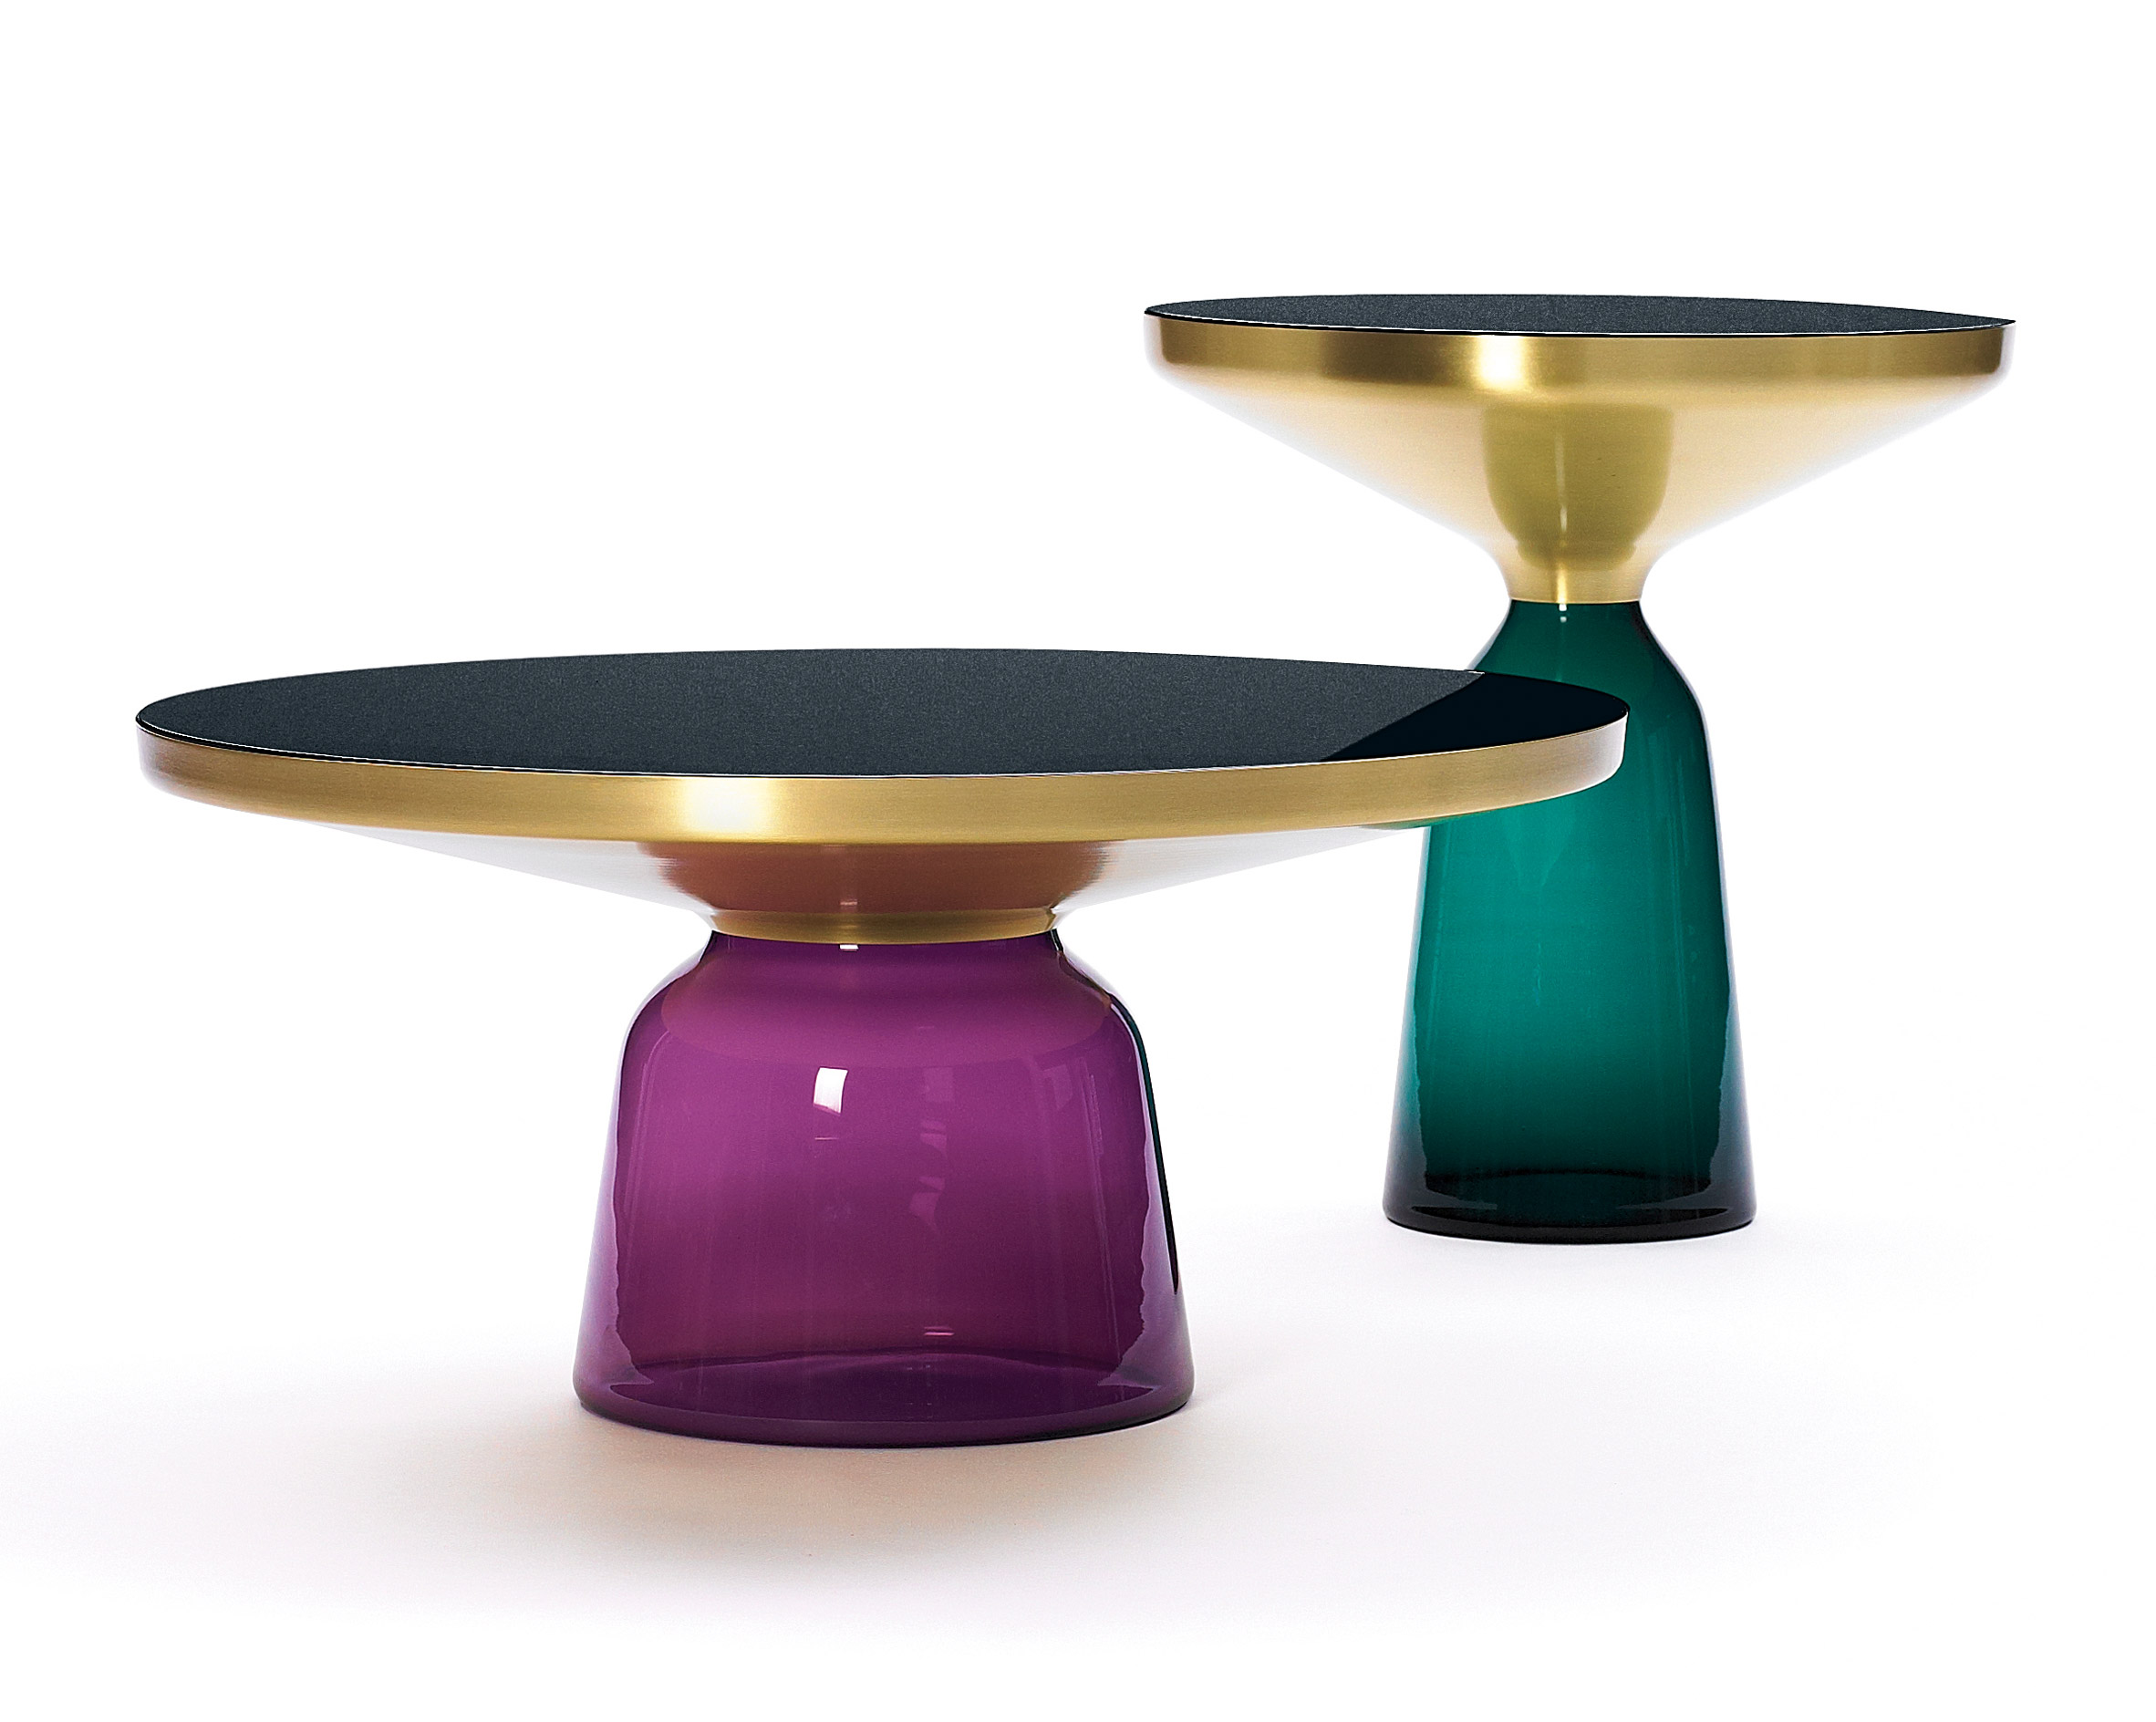 Bell table by Sebastian Herkner